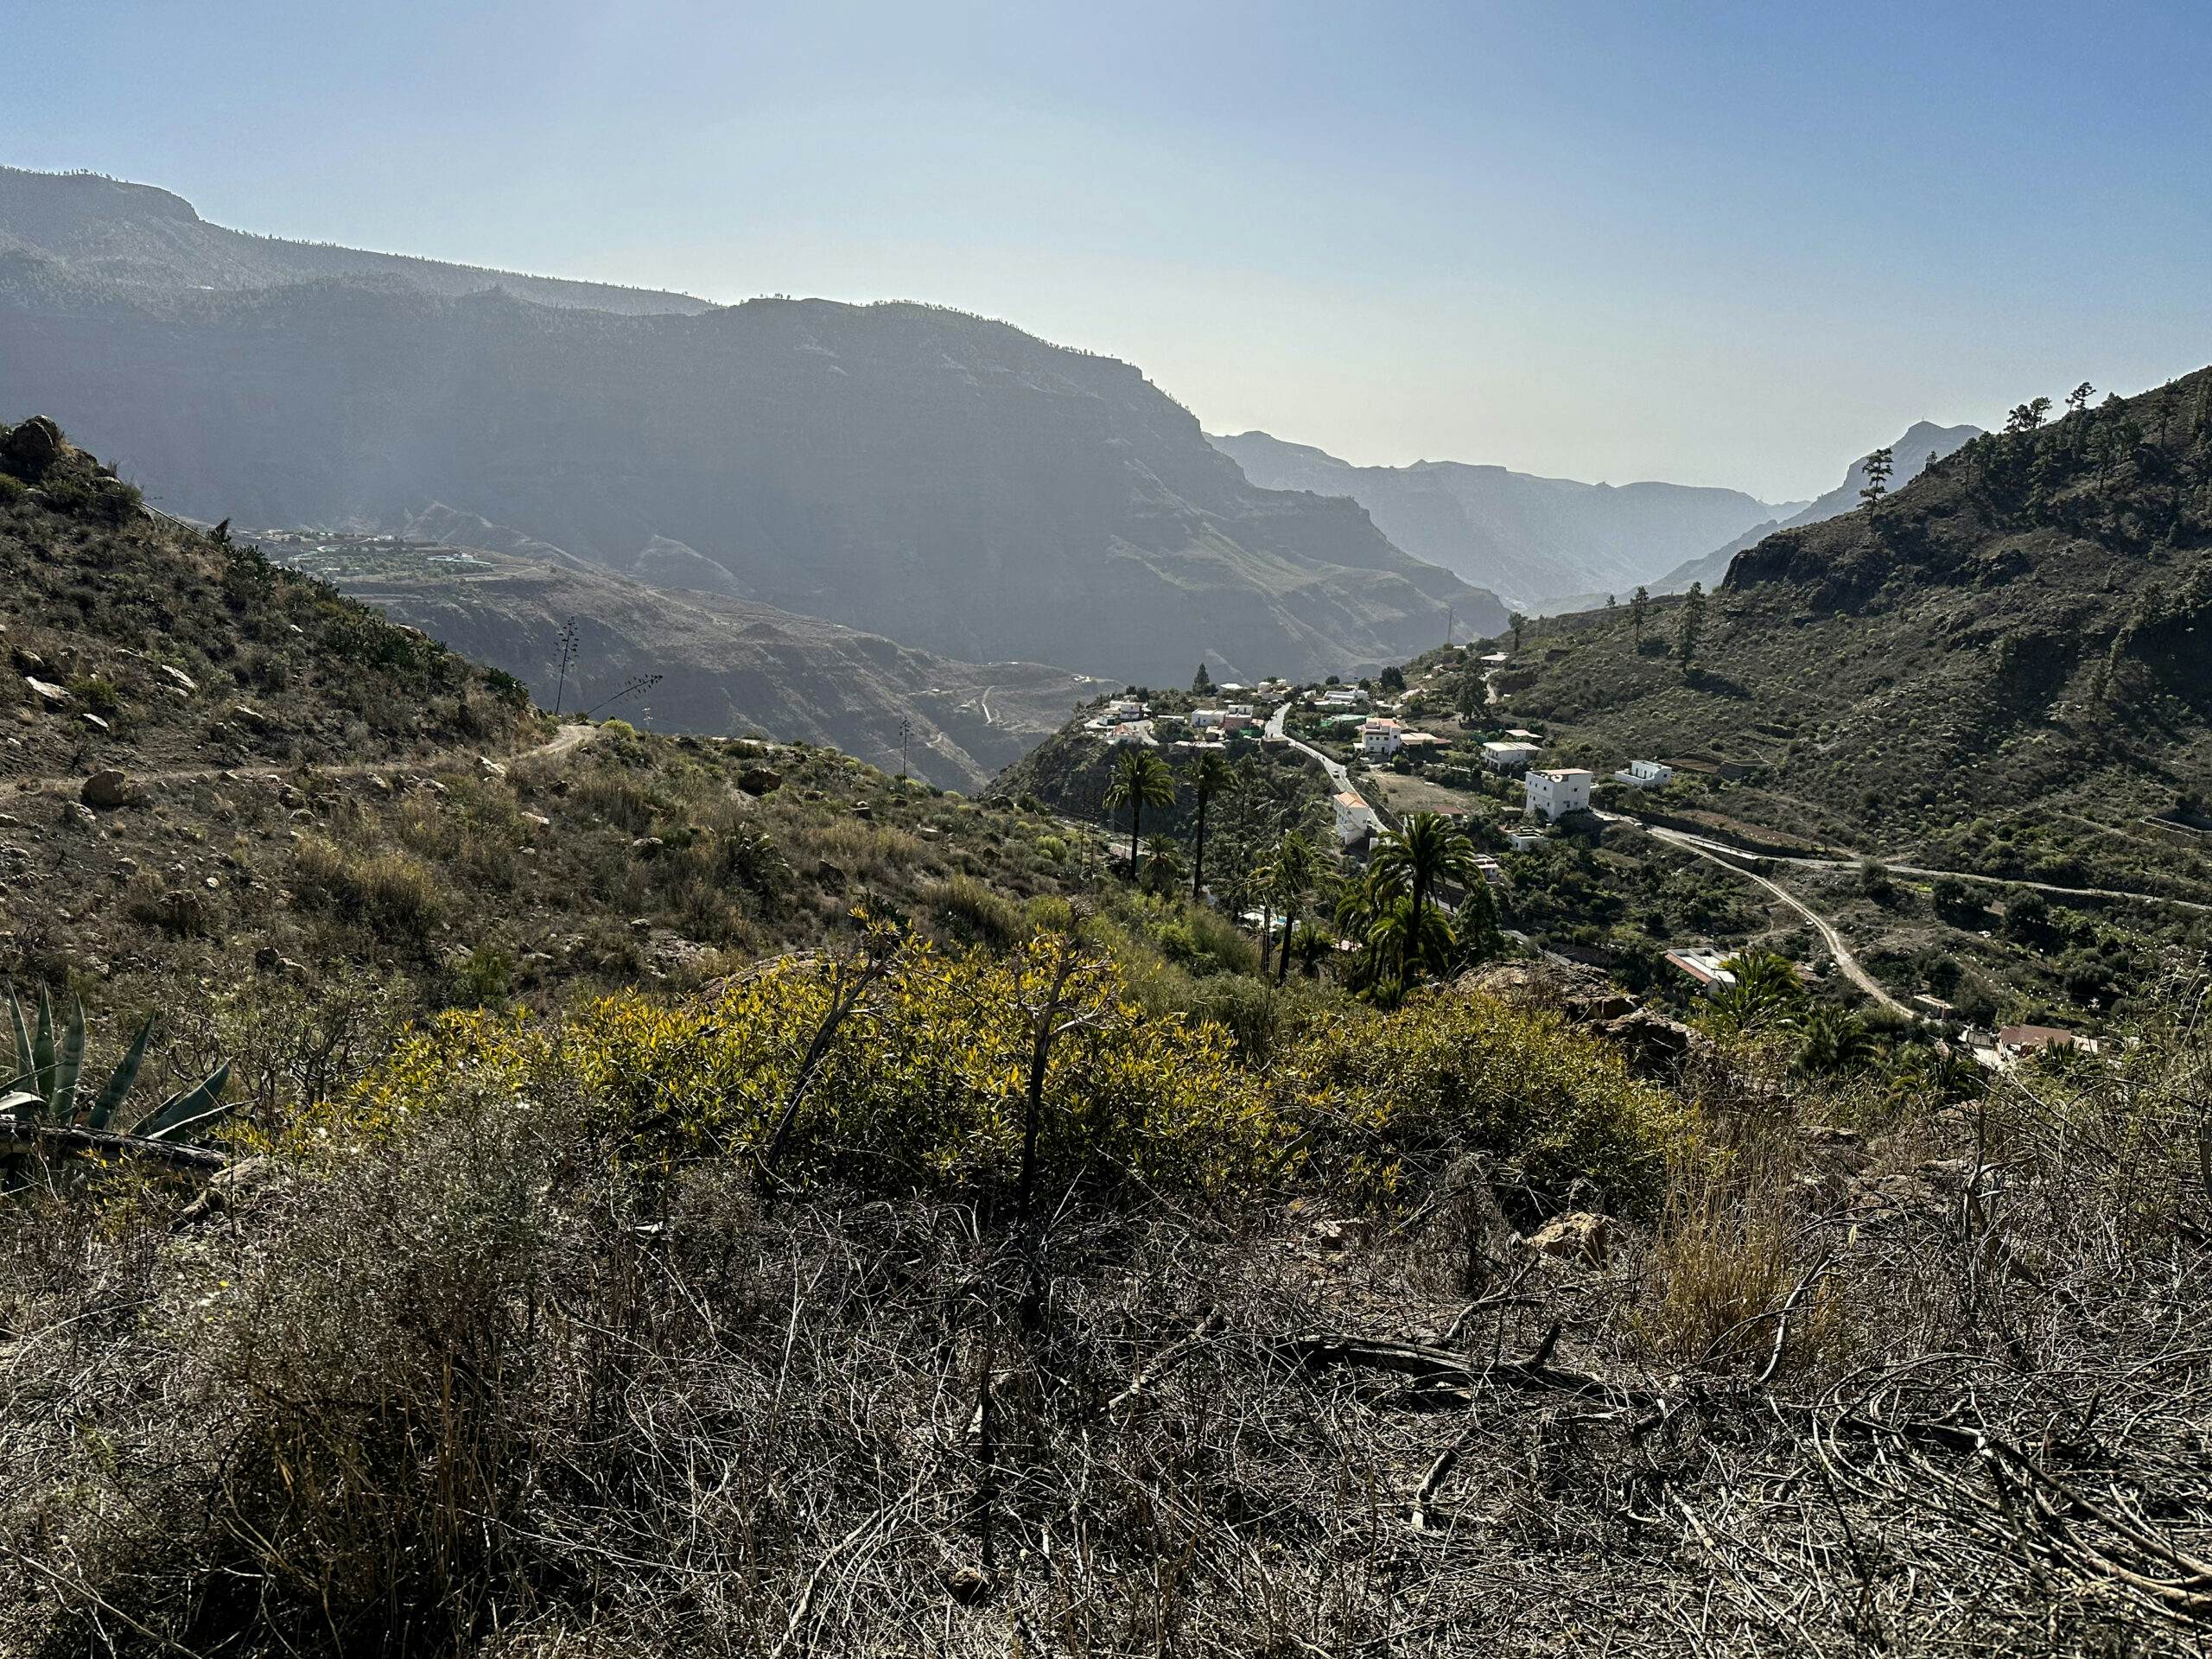 View of Barranquillo de Andrés